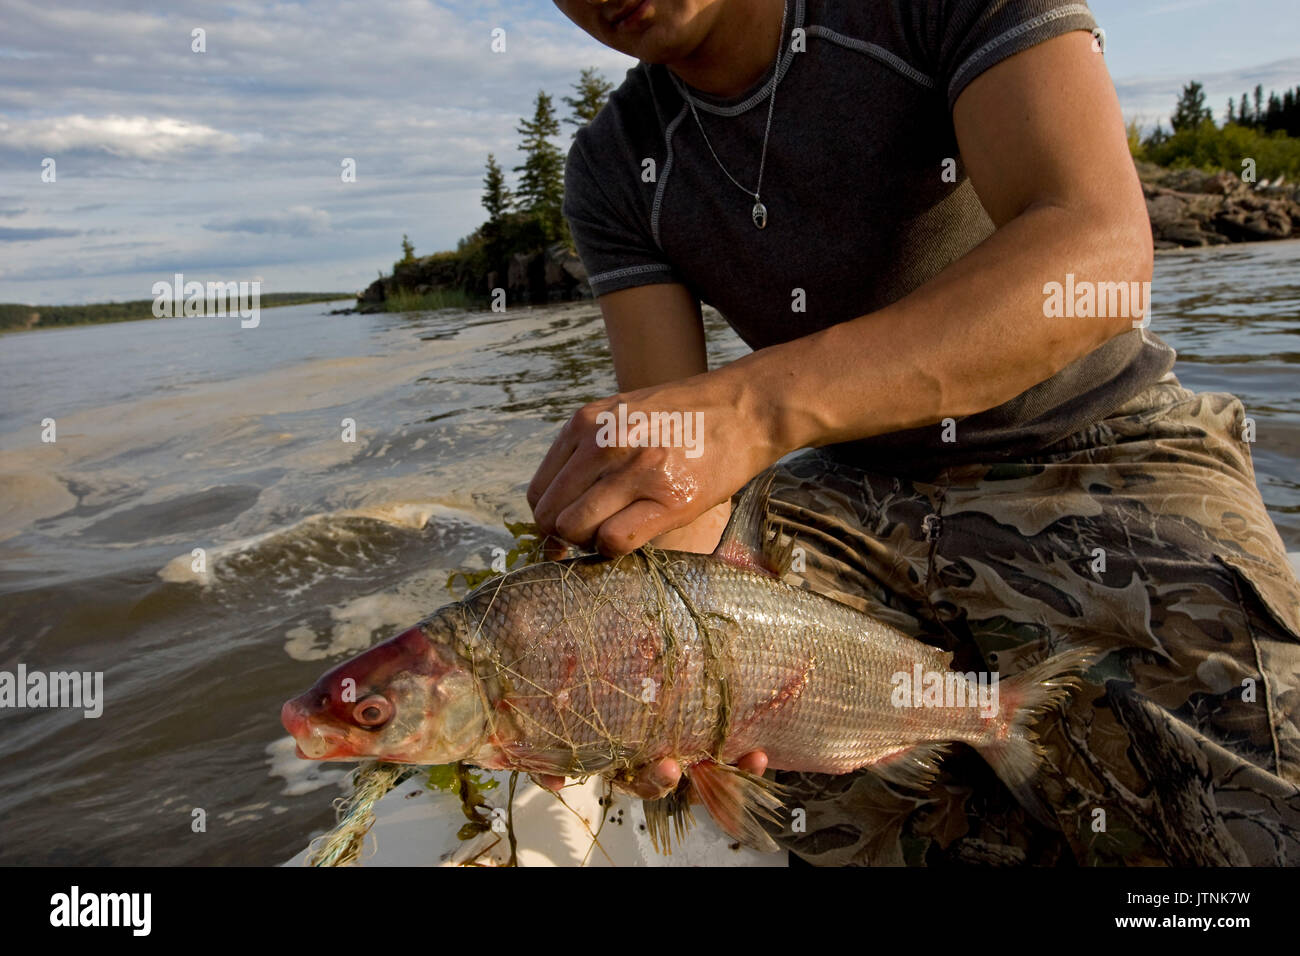 Fisherman Robert Grandjambe, 24, pesca sul lago Athabasca vicino a Fort Chipewyan, Canada. Egli utilizza il pesce per alimentare i suoi cani. Egli ha preso tre pesci che erano anormali. Il grande pesce bianco rosso aveva piaghe su diverse parti del corpo. C'era sporcizia sul lago da una fonte sconosciuta. Robert è la cottura di coregoni e la carne di alce e tè su una bussola fire. Egli ha imparato molto sulla vita e la cottura nella boccola da suo nonno e padre. Come un giovane Dene egli è uno dei pochi continuando alcuni dei modi tradizionali mentre lavorando anche al Albian Sands Oil Company come un millwright. Foto Stock